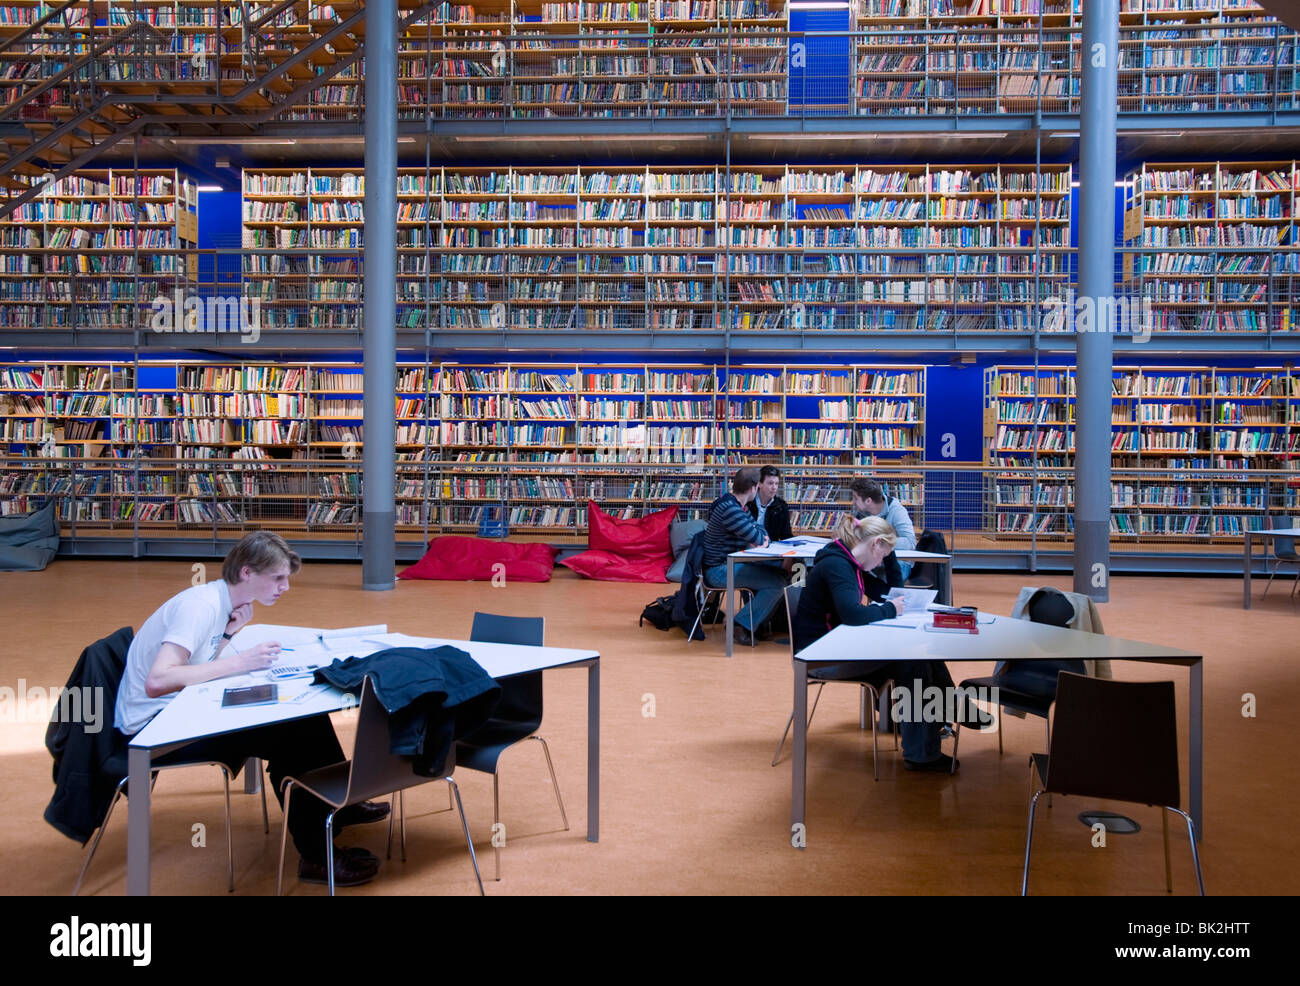 Modernes Interieur Delft technische Universität in Delft Holland, Architekt Mecanoo Bibliothek Stockfoto